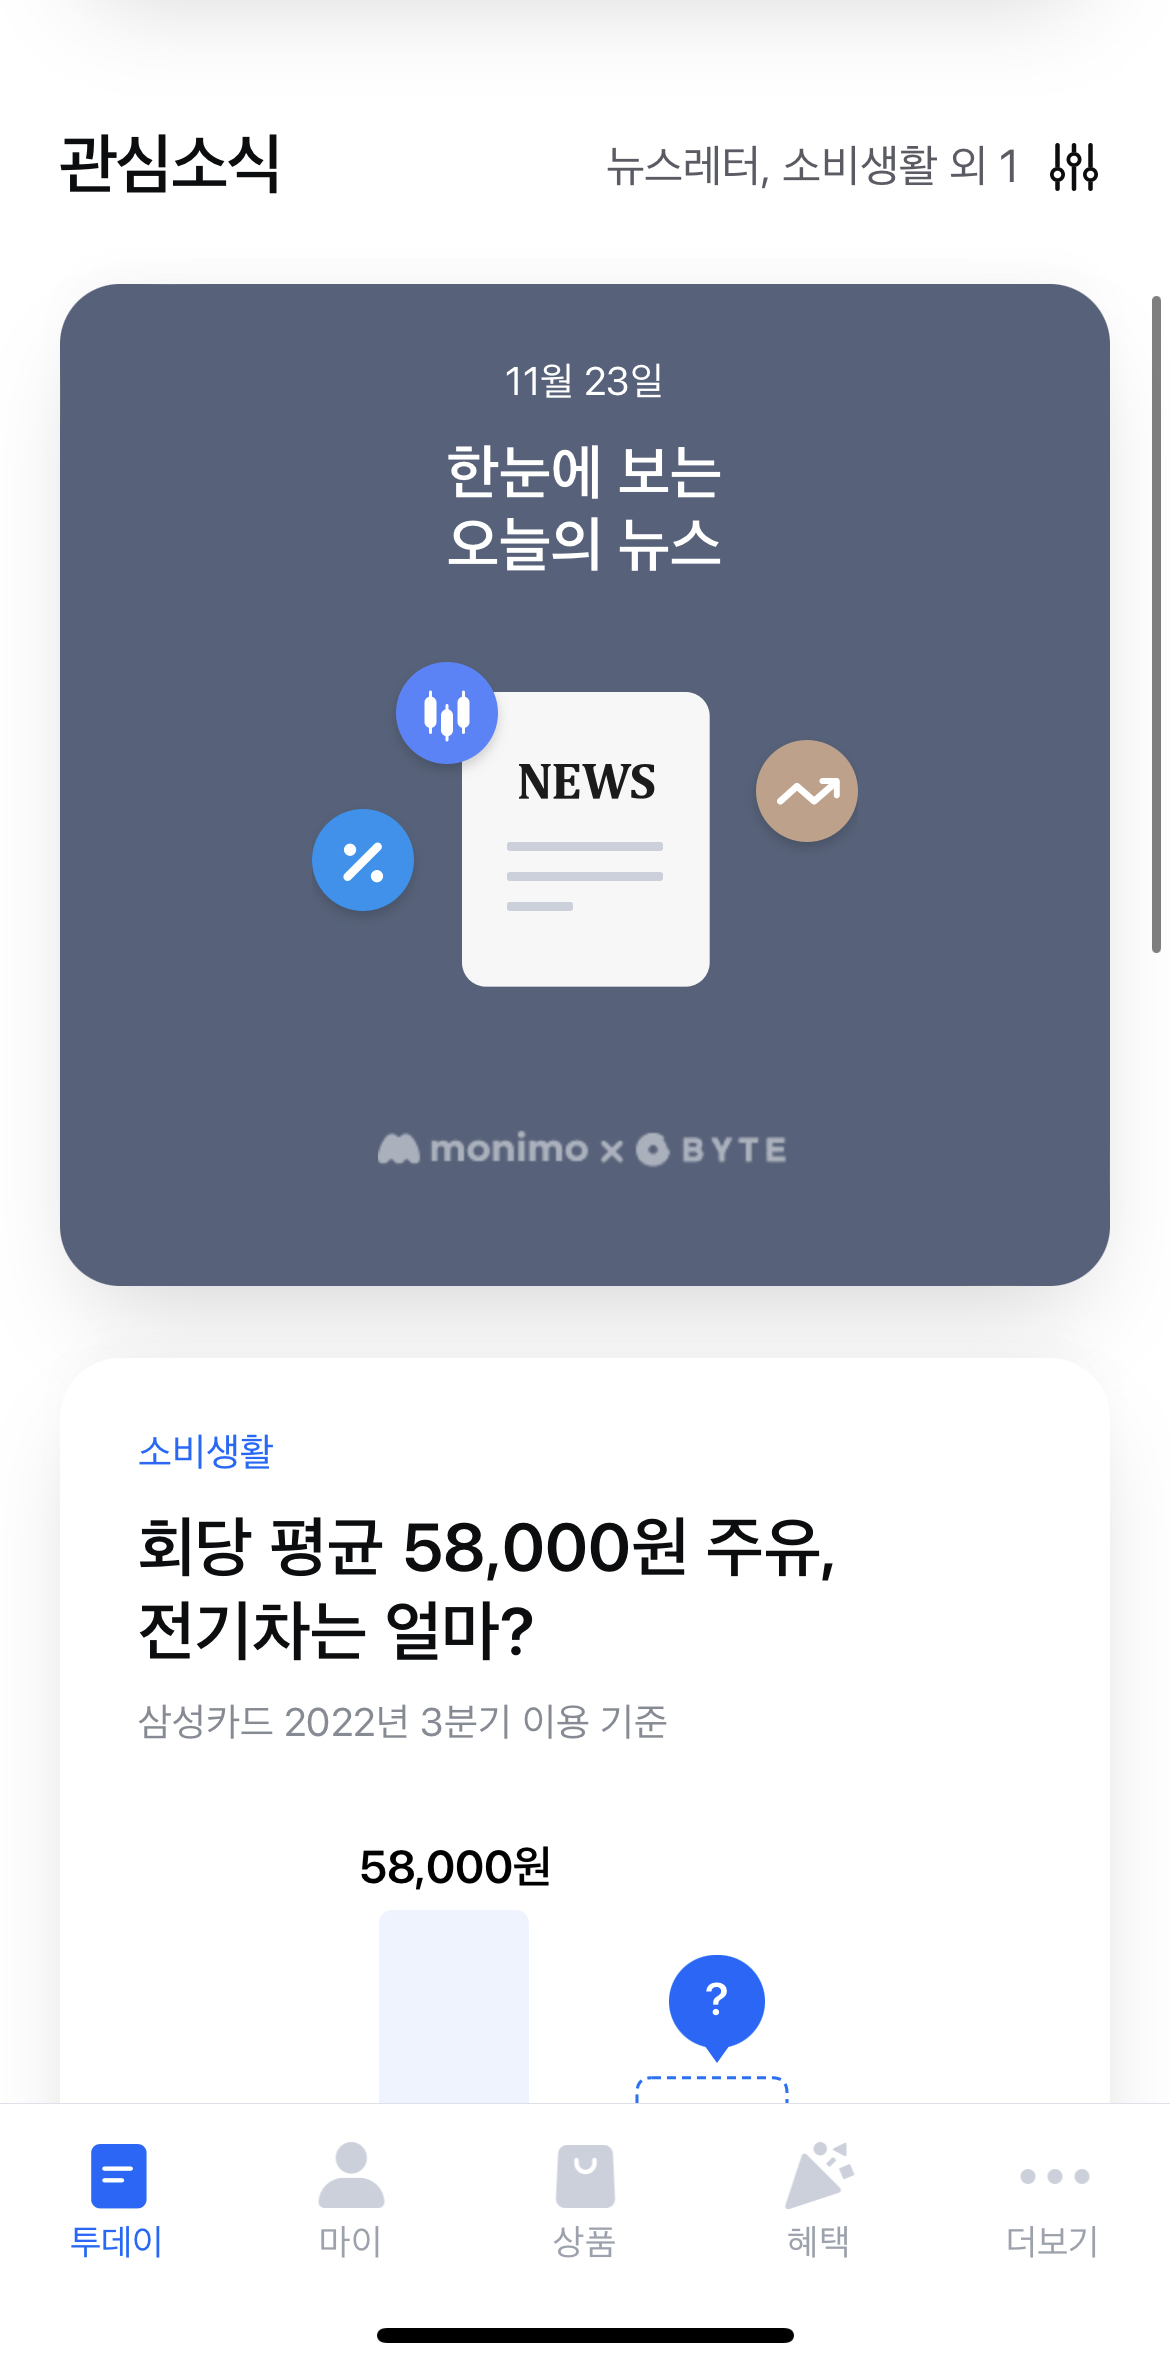 삼성 모니모 앱